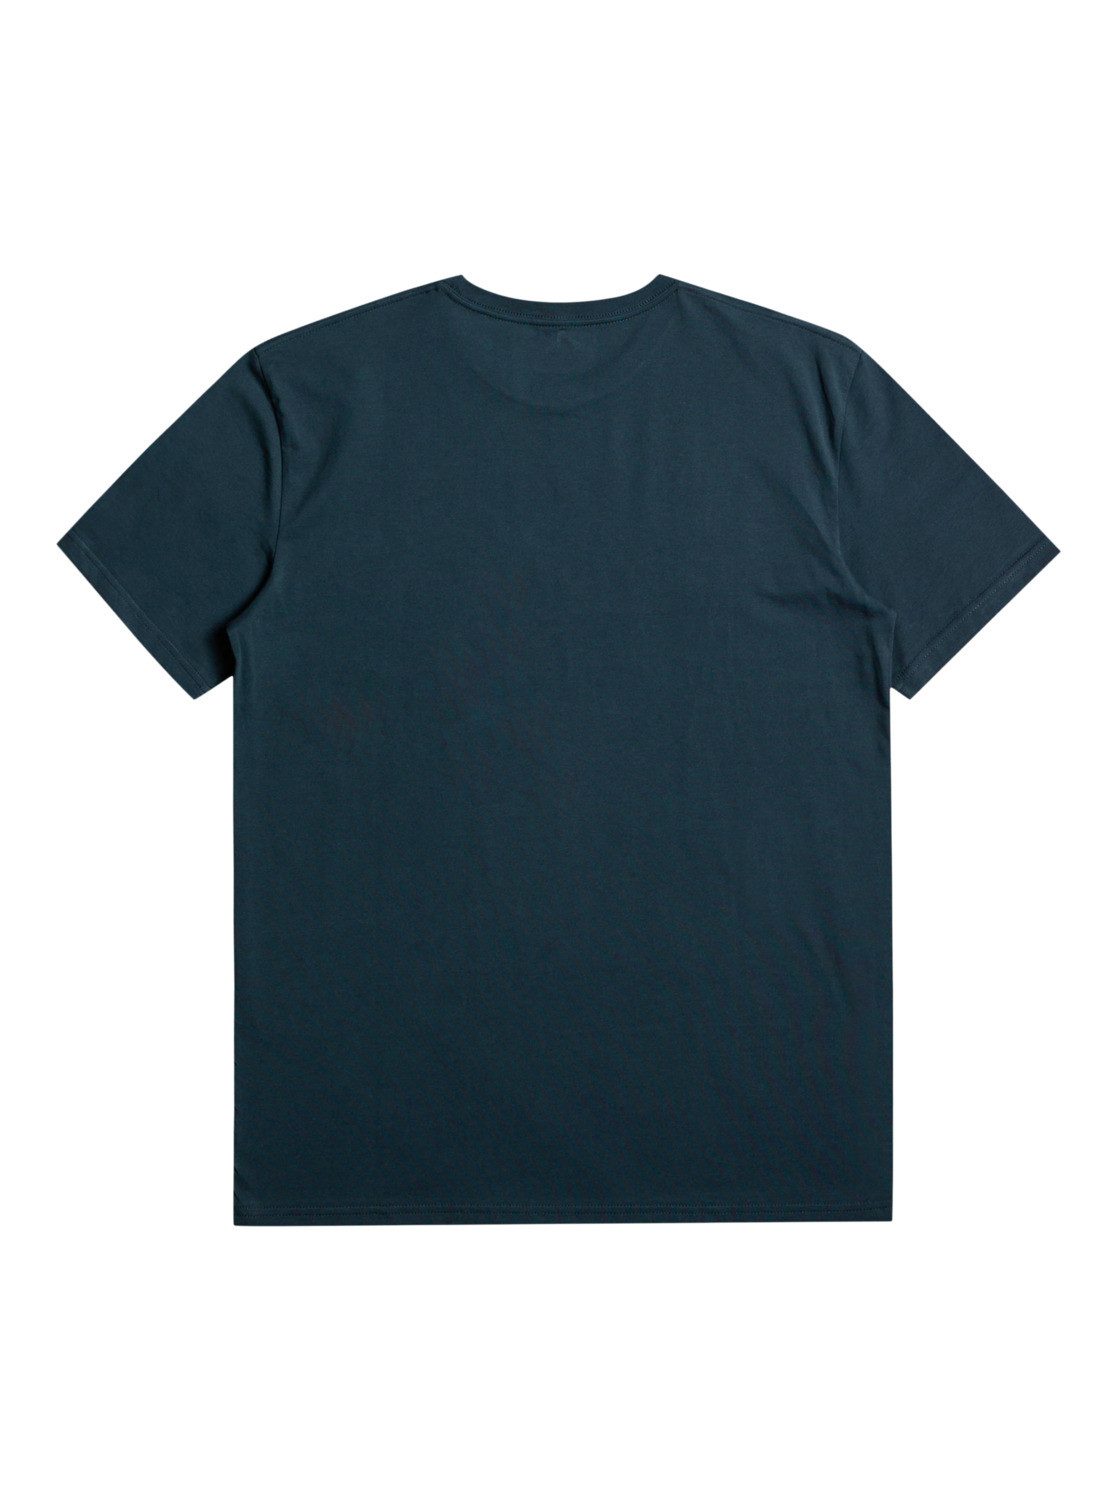 Blazer Quiksilver Signals Navy Mixed T-Shirt